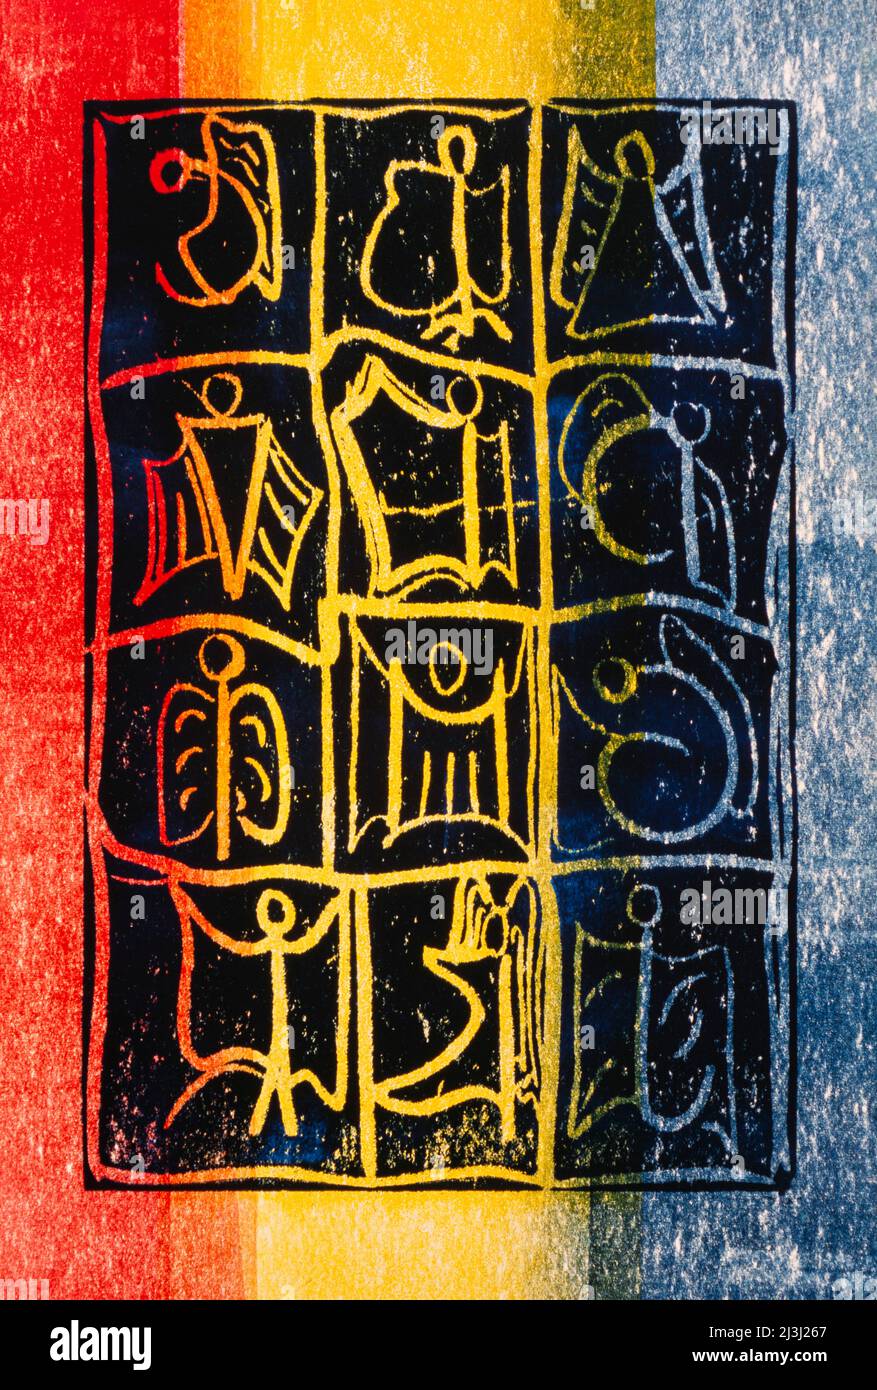 Stampa grafica di Gisela Oberst dodici angeli, astratto, rosso, giallo, blu, figura dell'angelo, rappresentazione dell'angelo, esseri alati, mistici, celesti Foto Stock